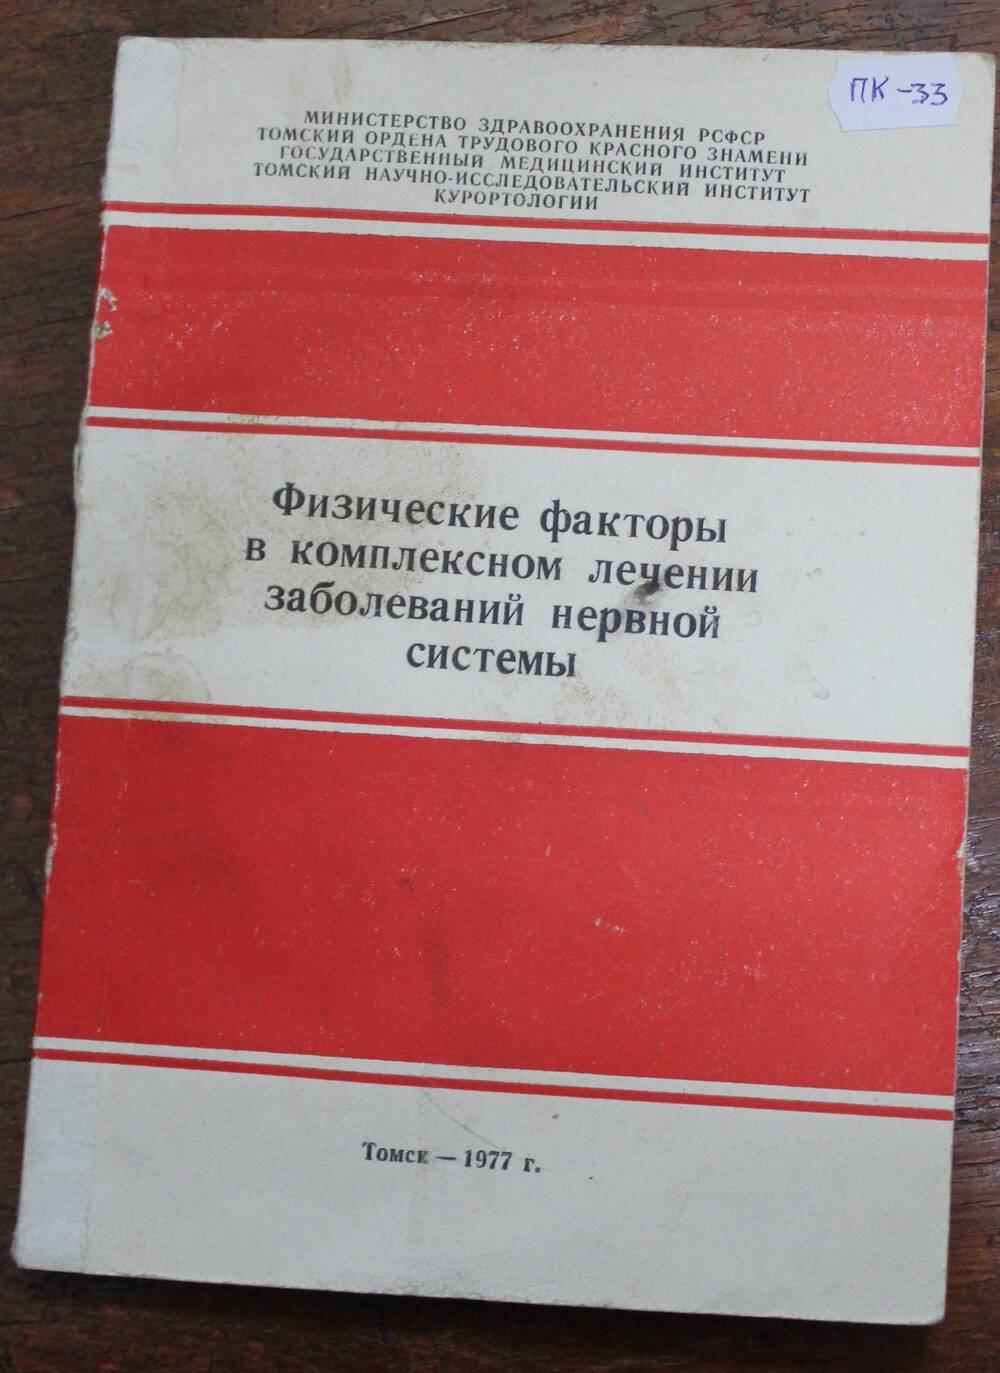 Книга Физические факторы в комплексном лечении заболеваний нервной системы, г. Томск, 1977г.